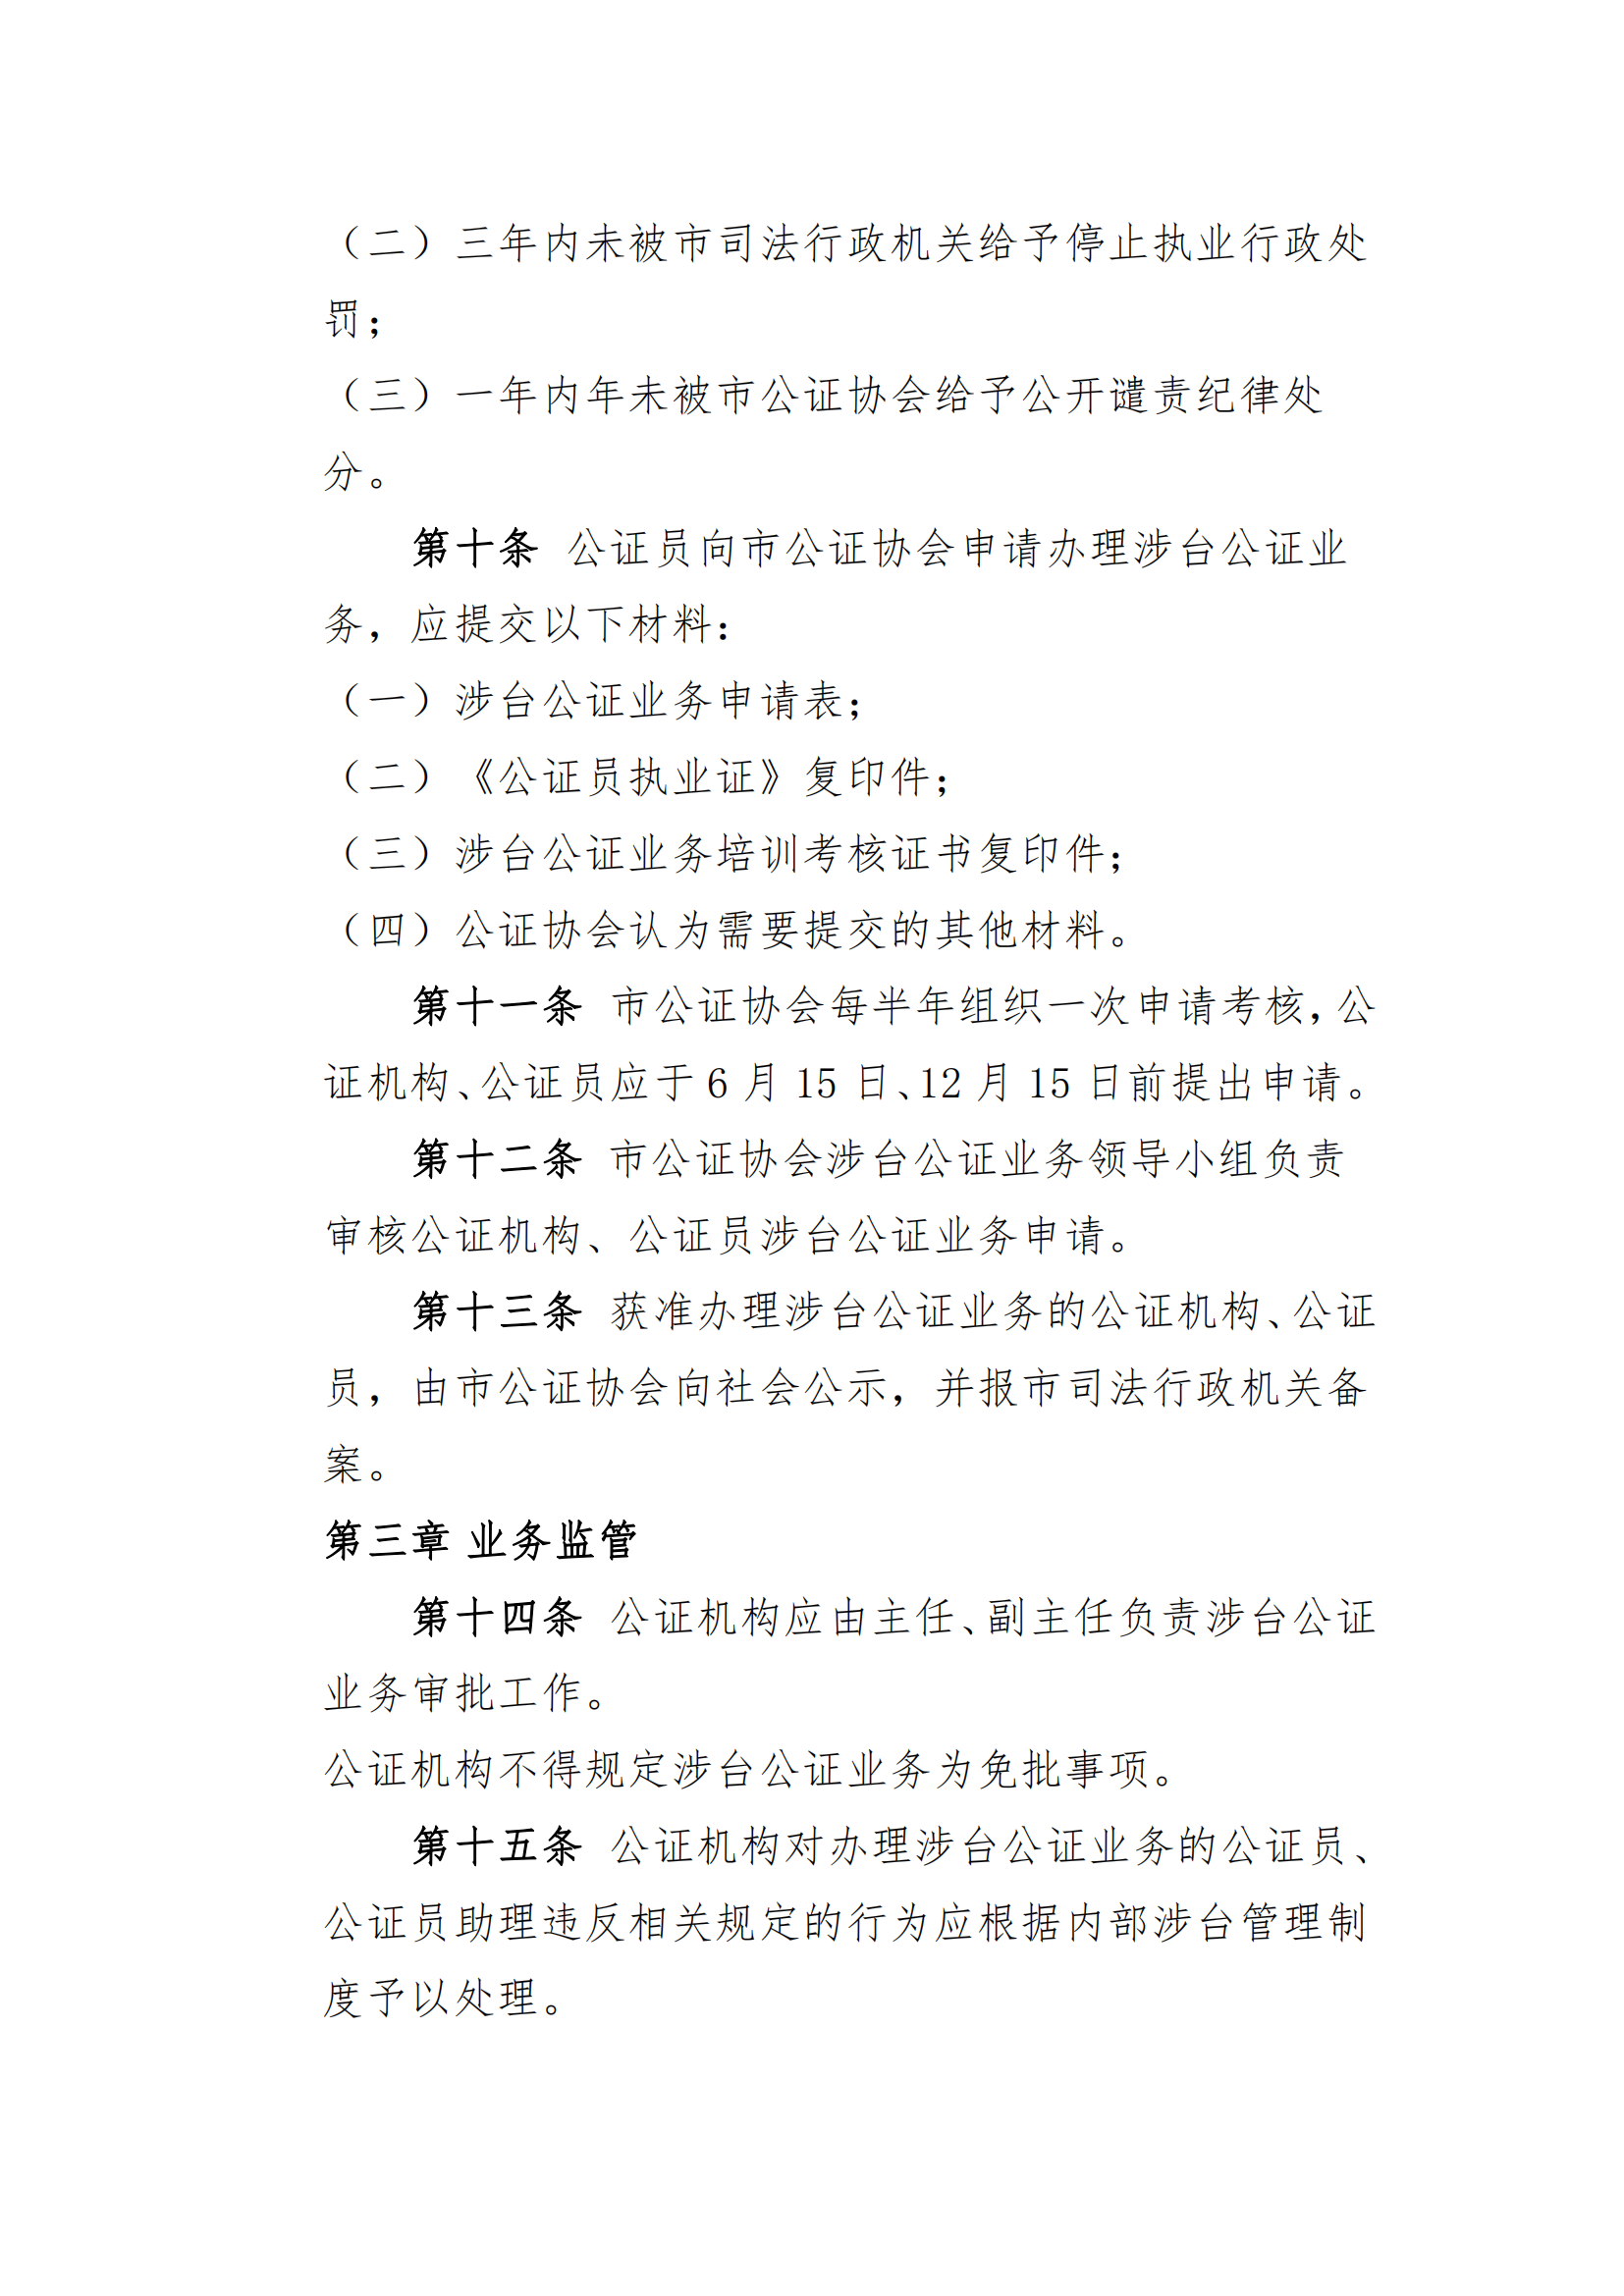 6北京市公证协会涉台公证业务管理办法_02